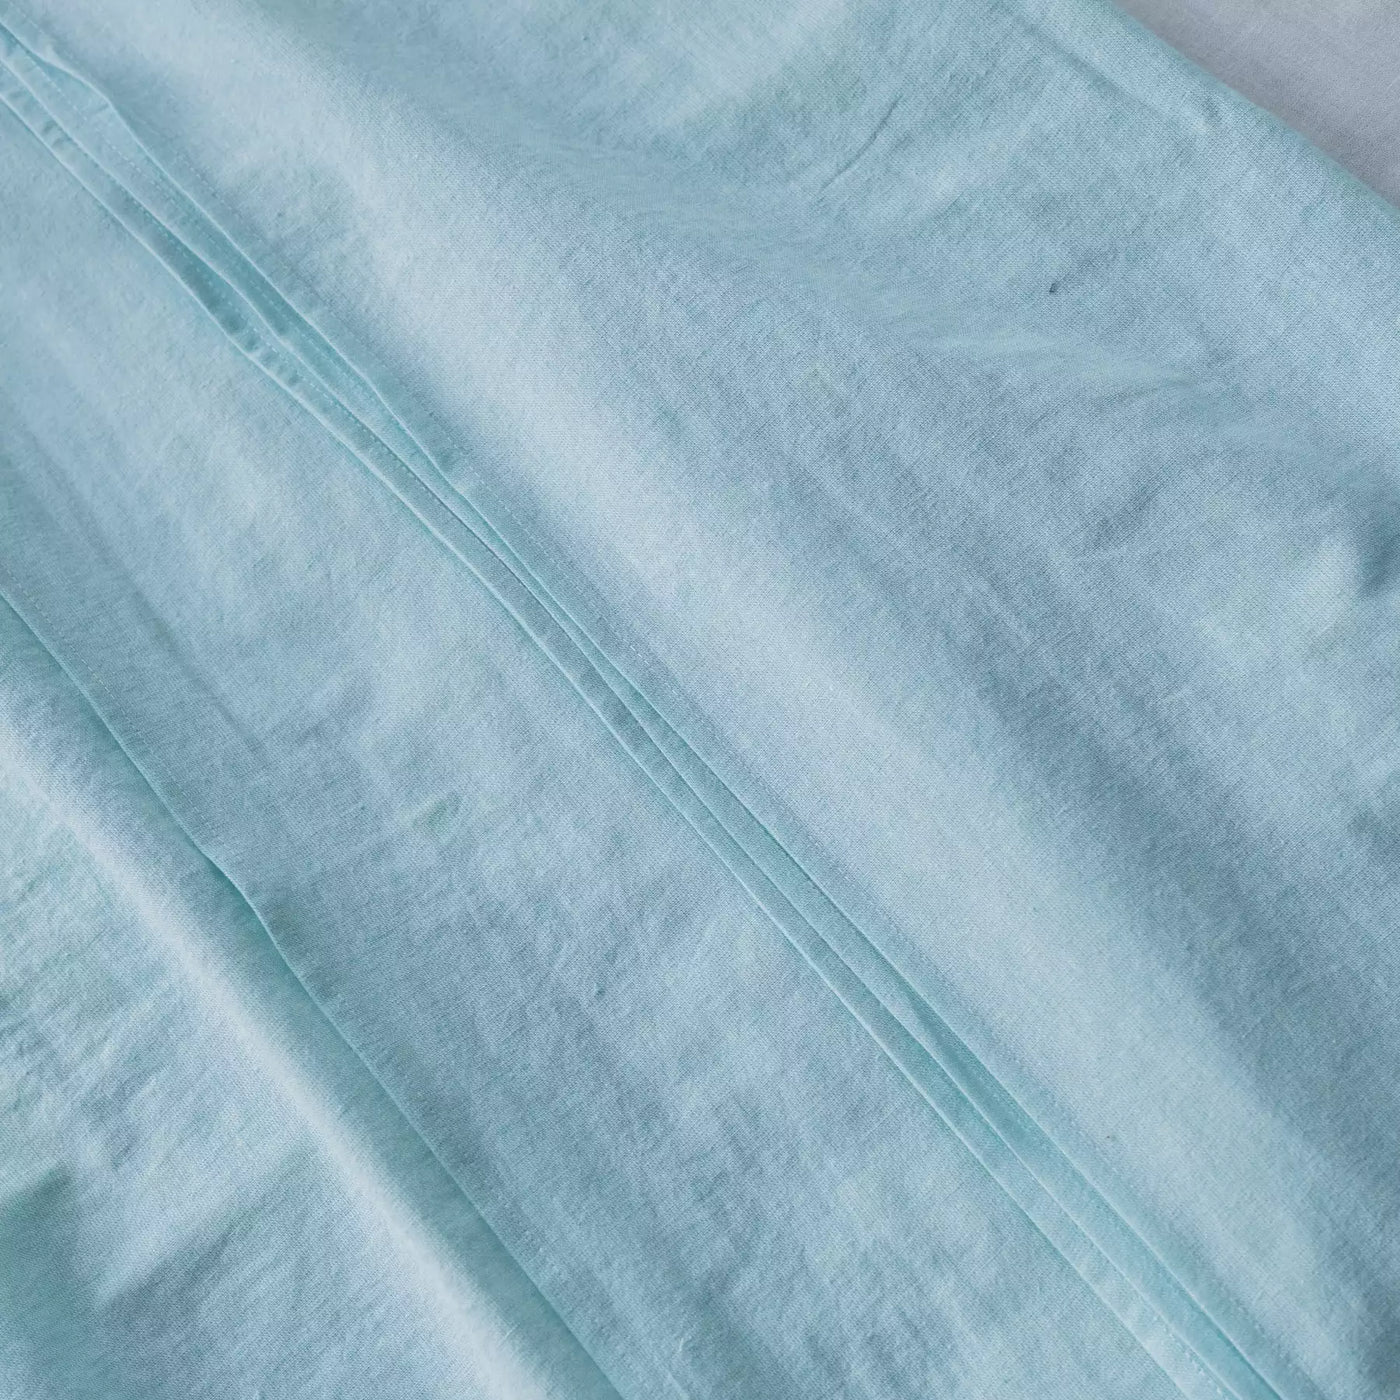 Set di biancheria da letto in lino e cotone con lenzuolo piatto 240x270 in turchese melange